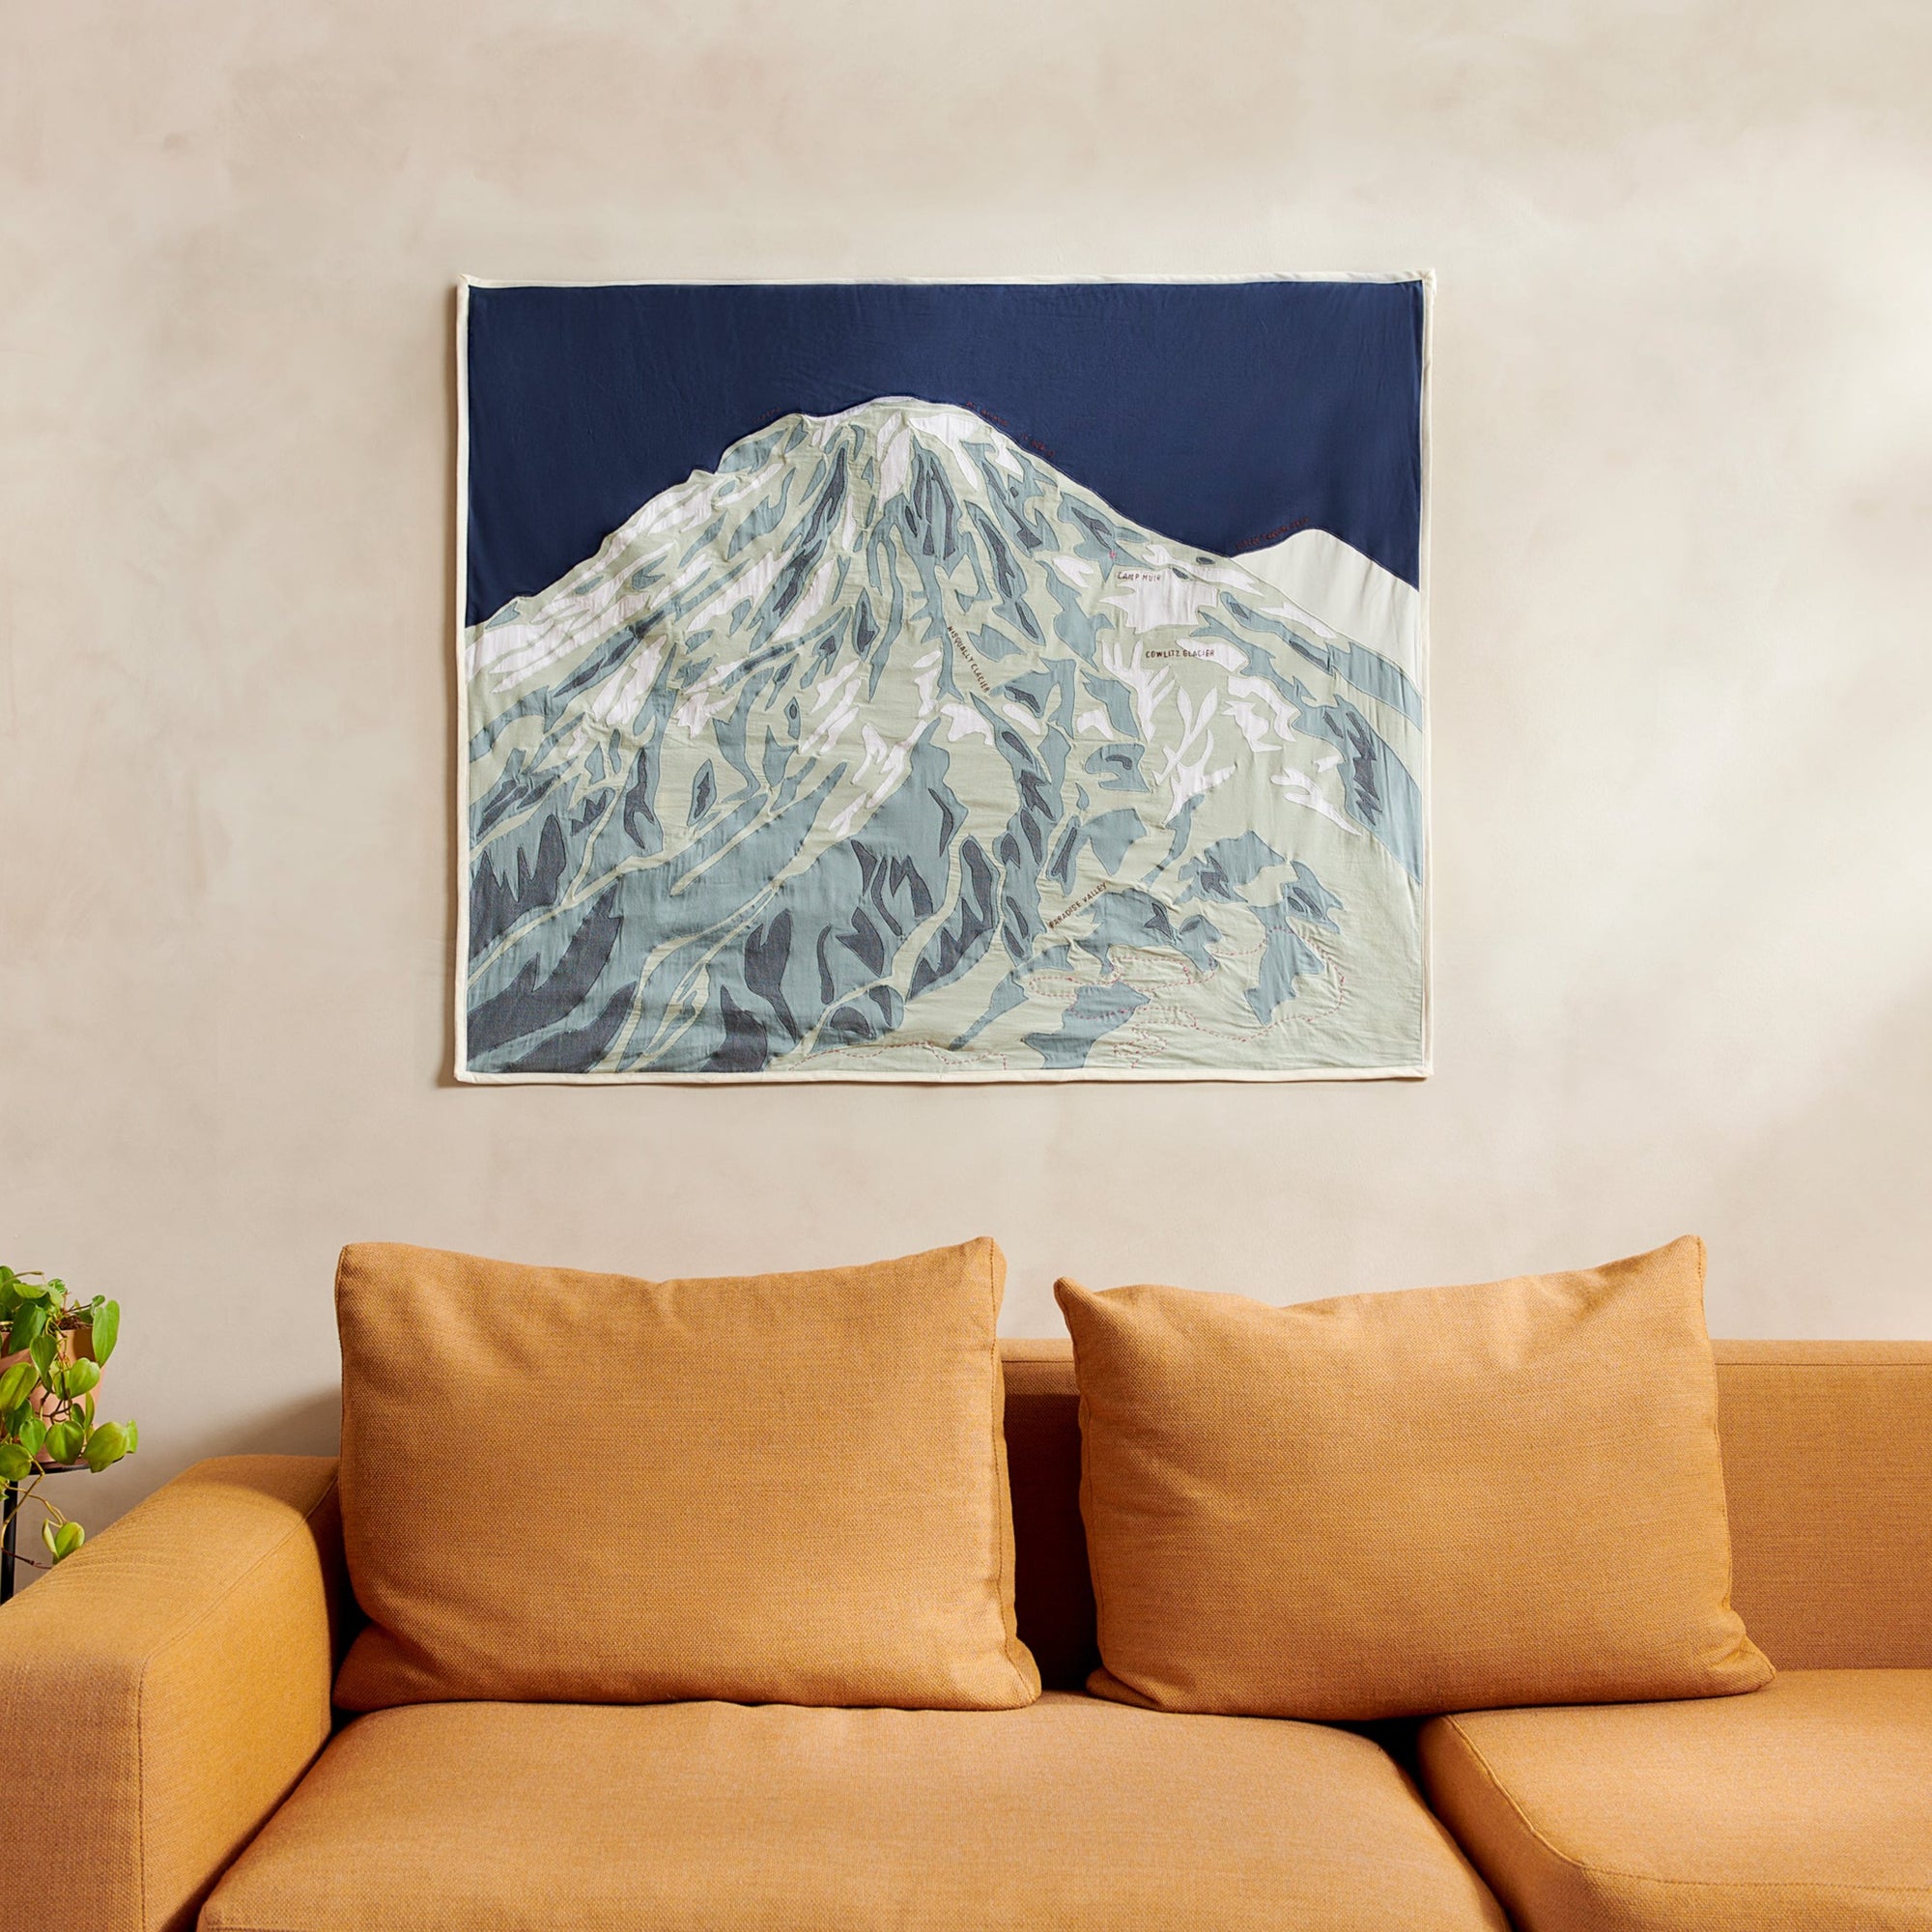 Mount Rainier (Tahoma) Portrait